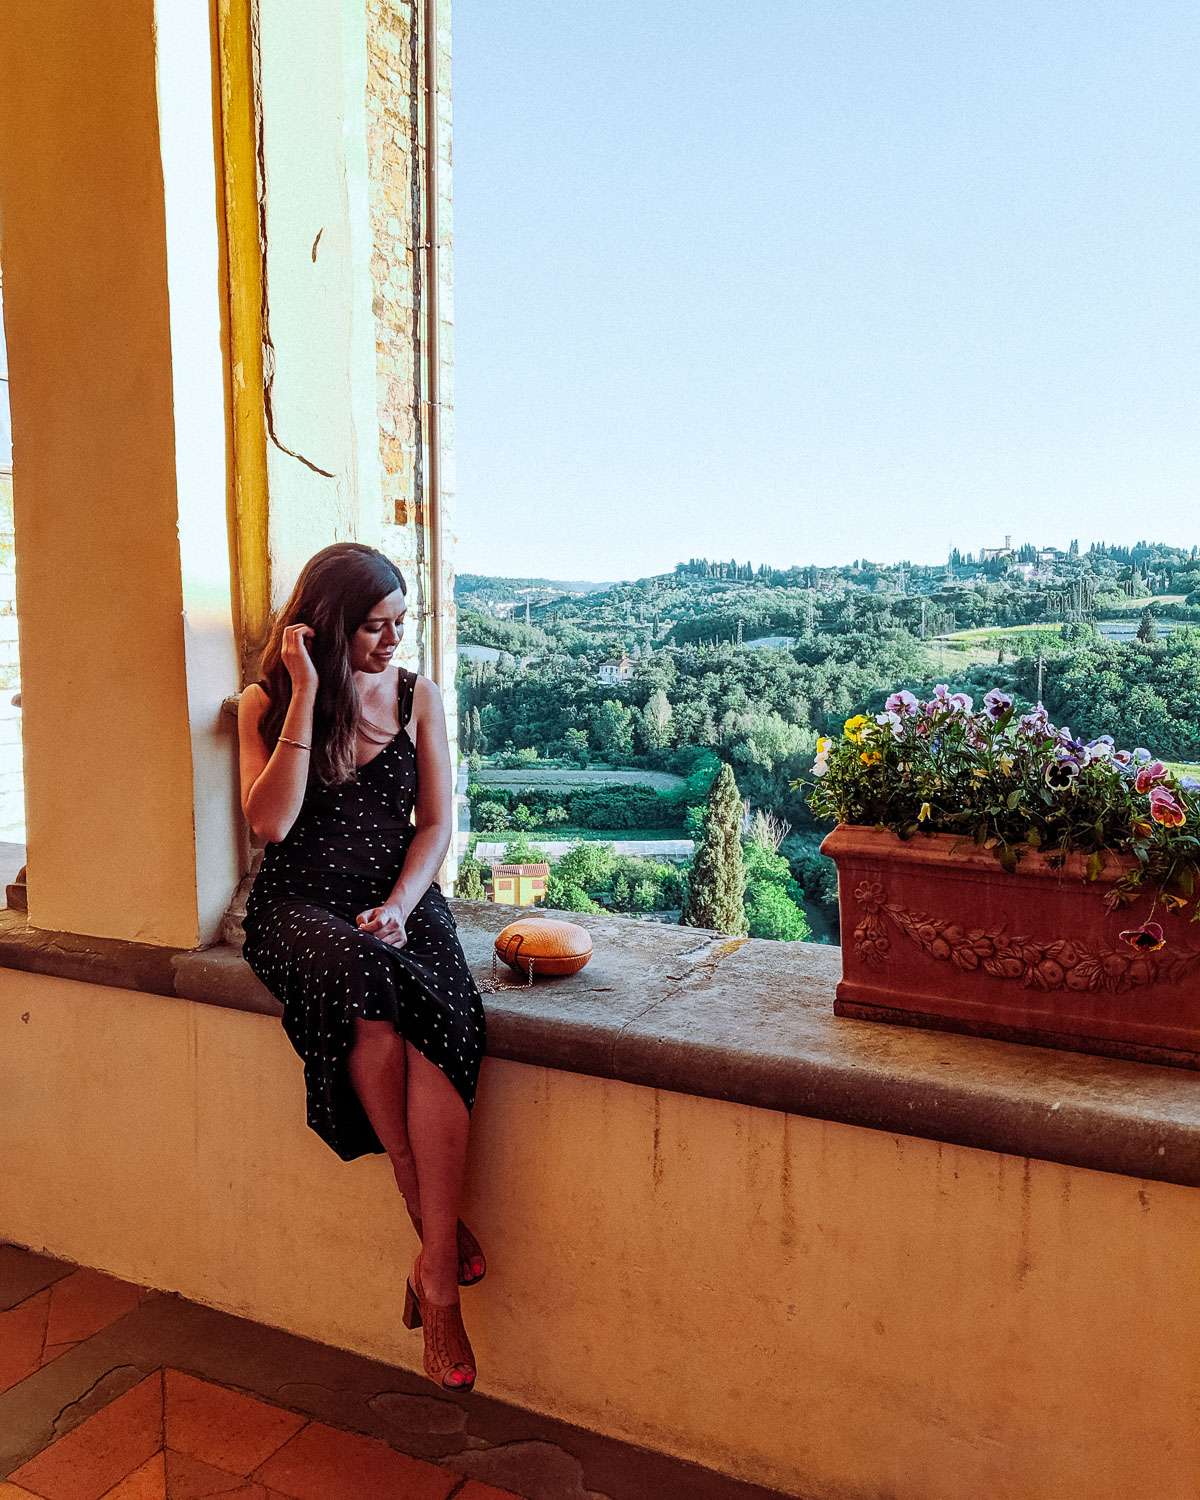 Rachel Off Duty: Woman in Italy